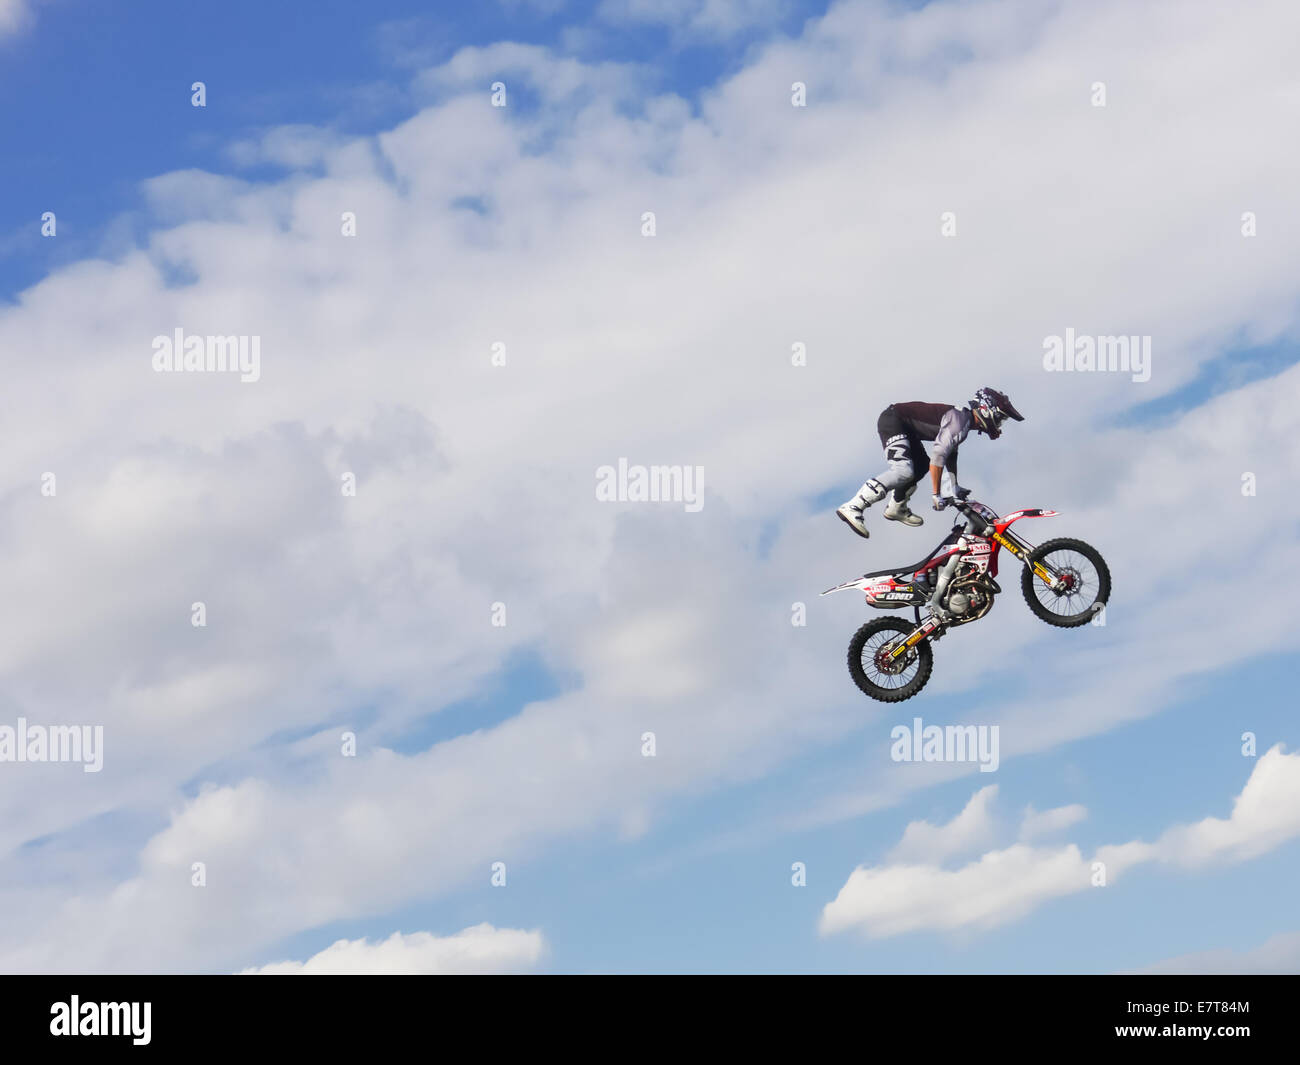 Une Fmx bike rider jumping contre un ciel bleu avec des nuages Banque D'Images